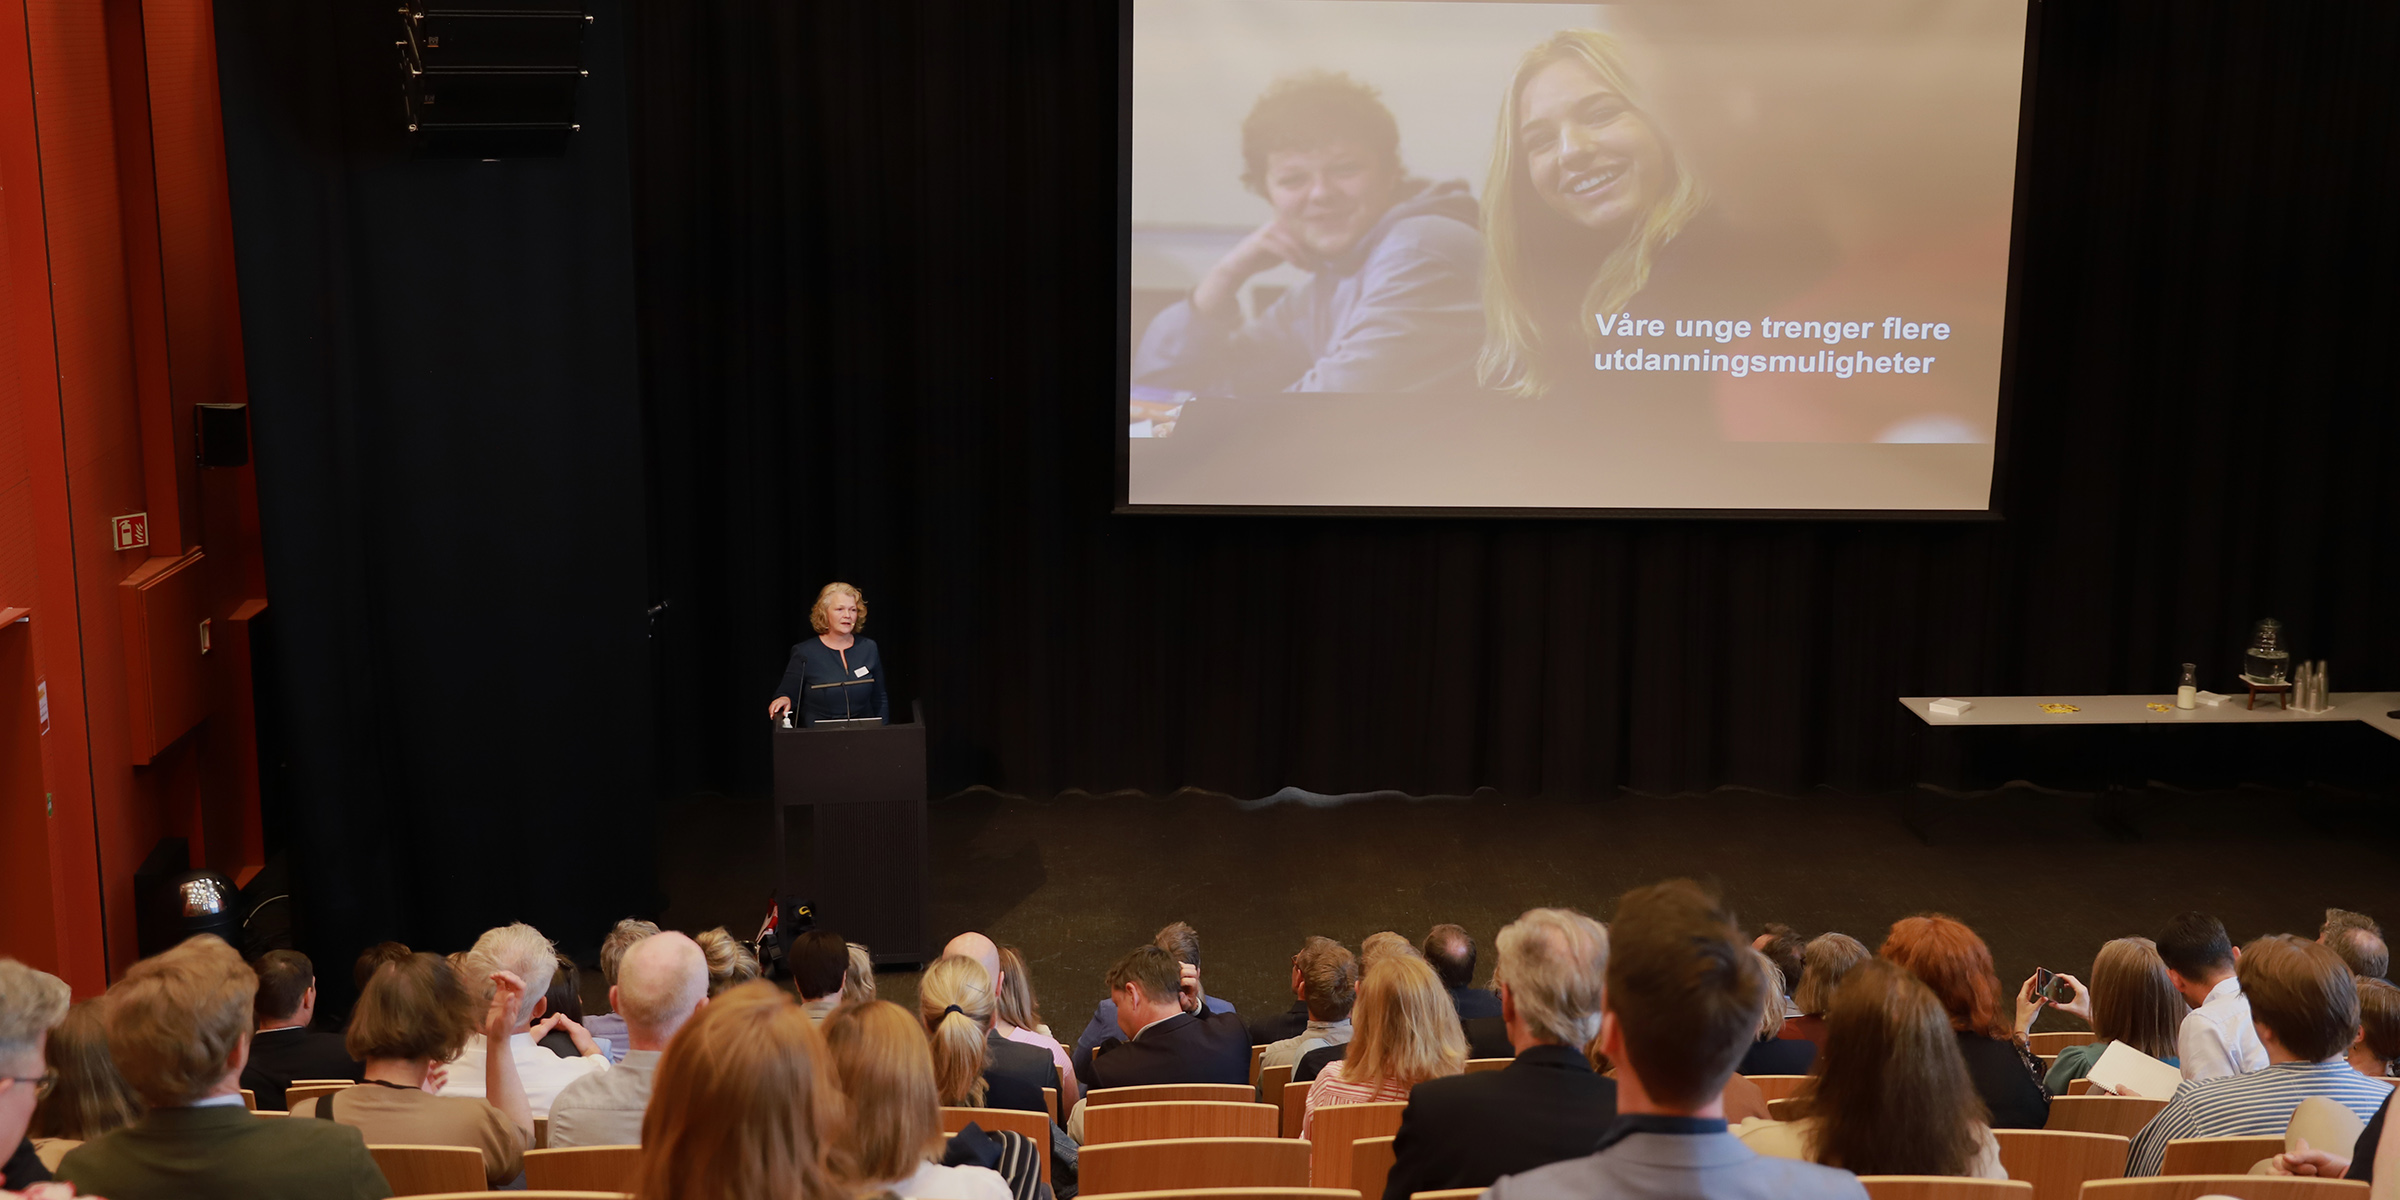 Foto av Annhild Mosdøl som holder presentasjon, tatt fra bakerst i salen slik at vi ser publikum bakfra.